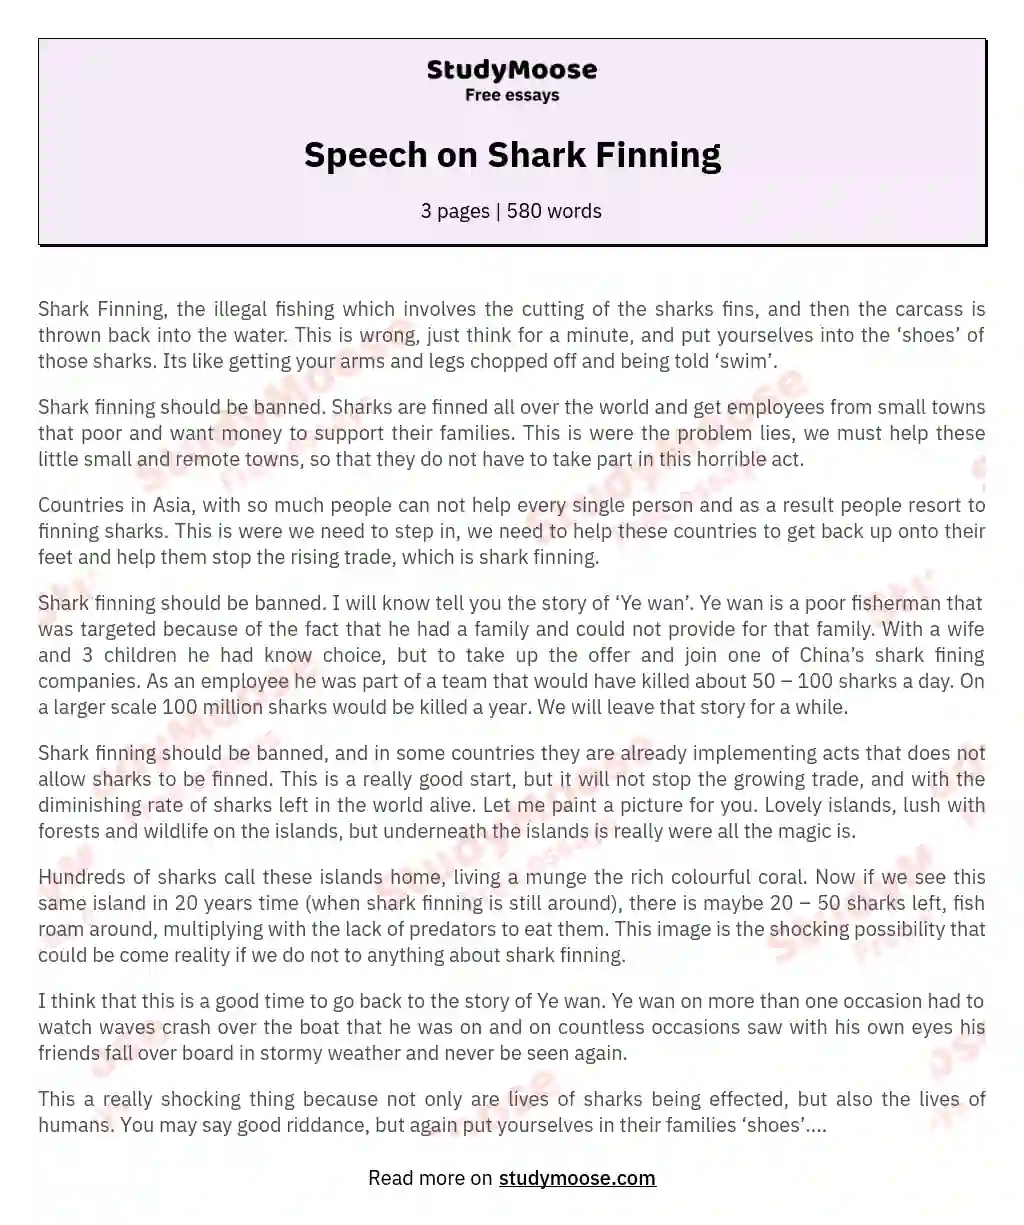 Speech on Shark Finning essay